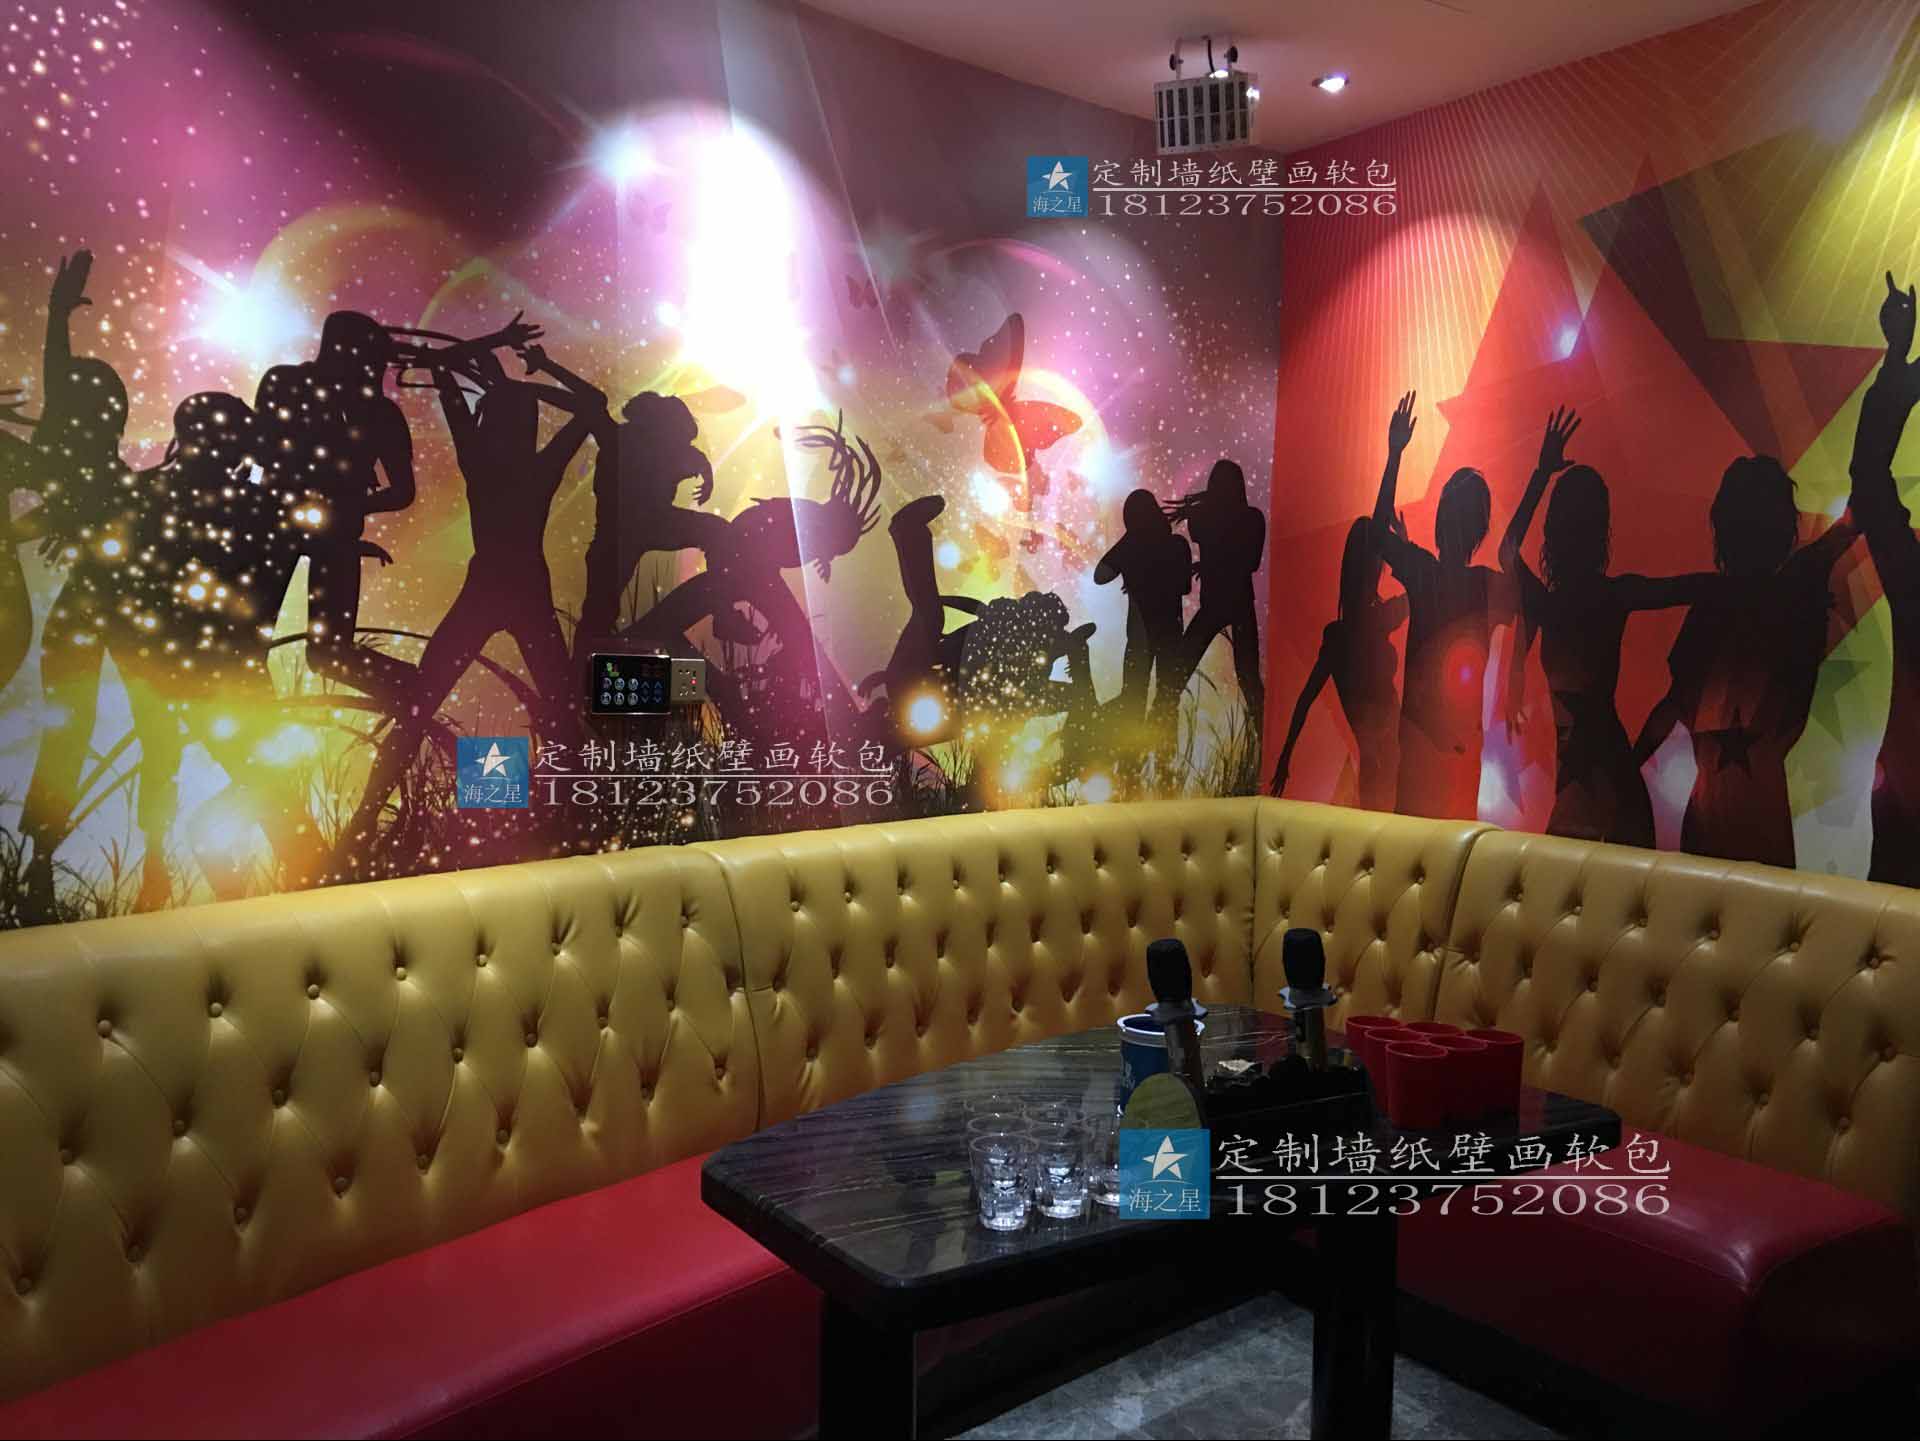 KTV装修壁纸 酒吧复古3D无缝壁画 音乐动感时尚墙纸壁画